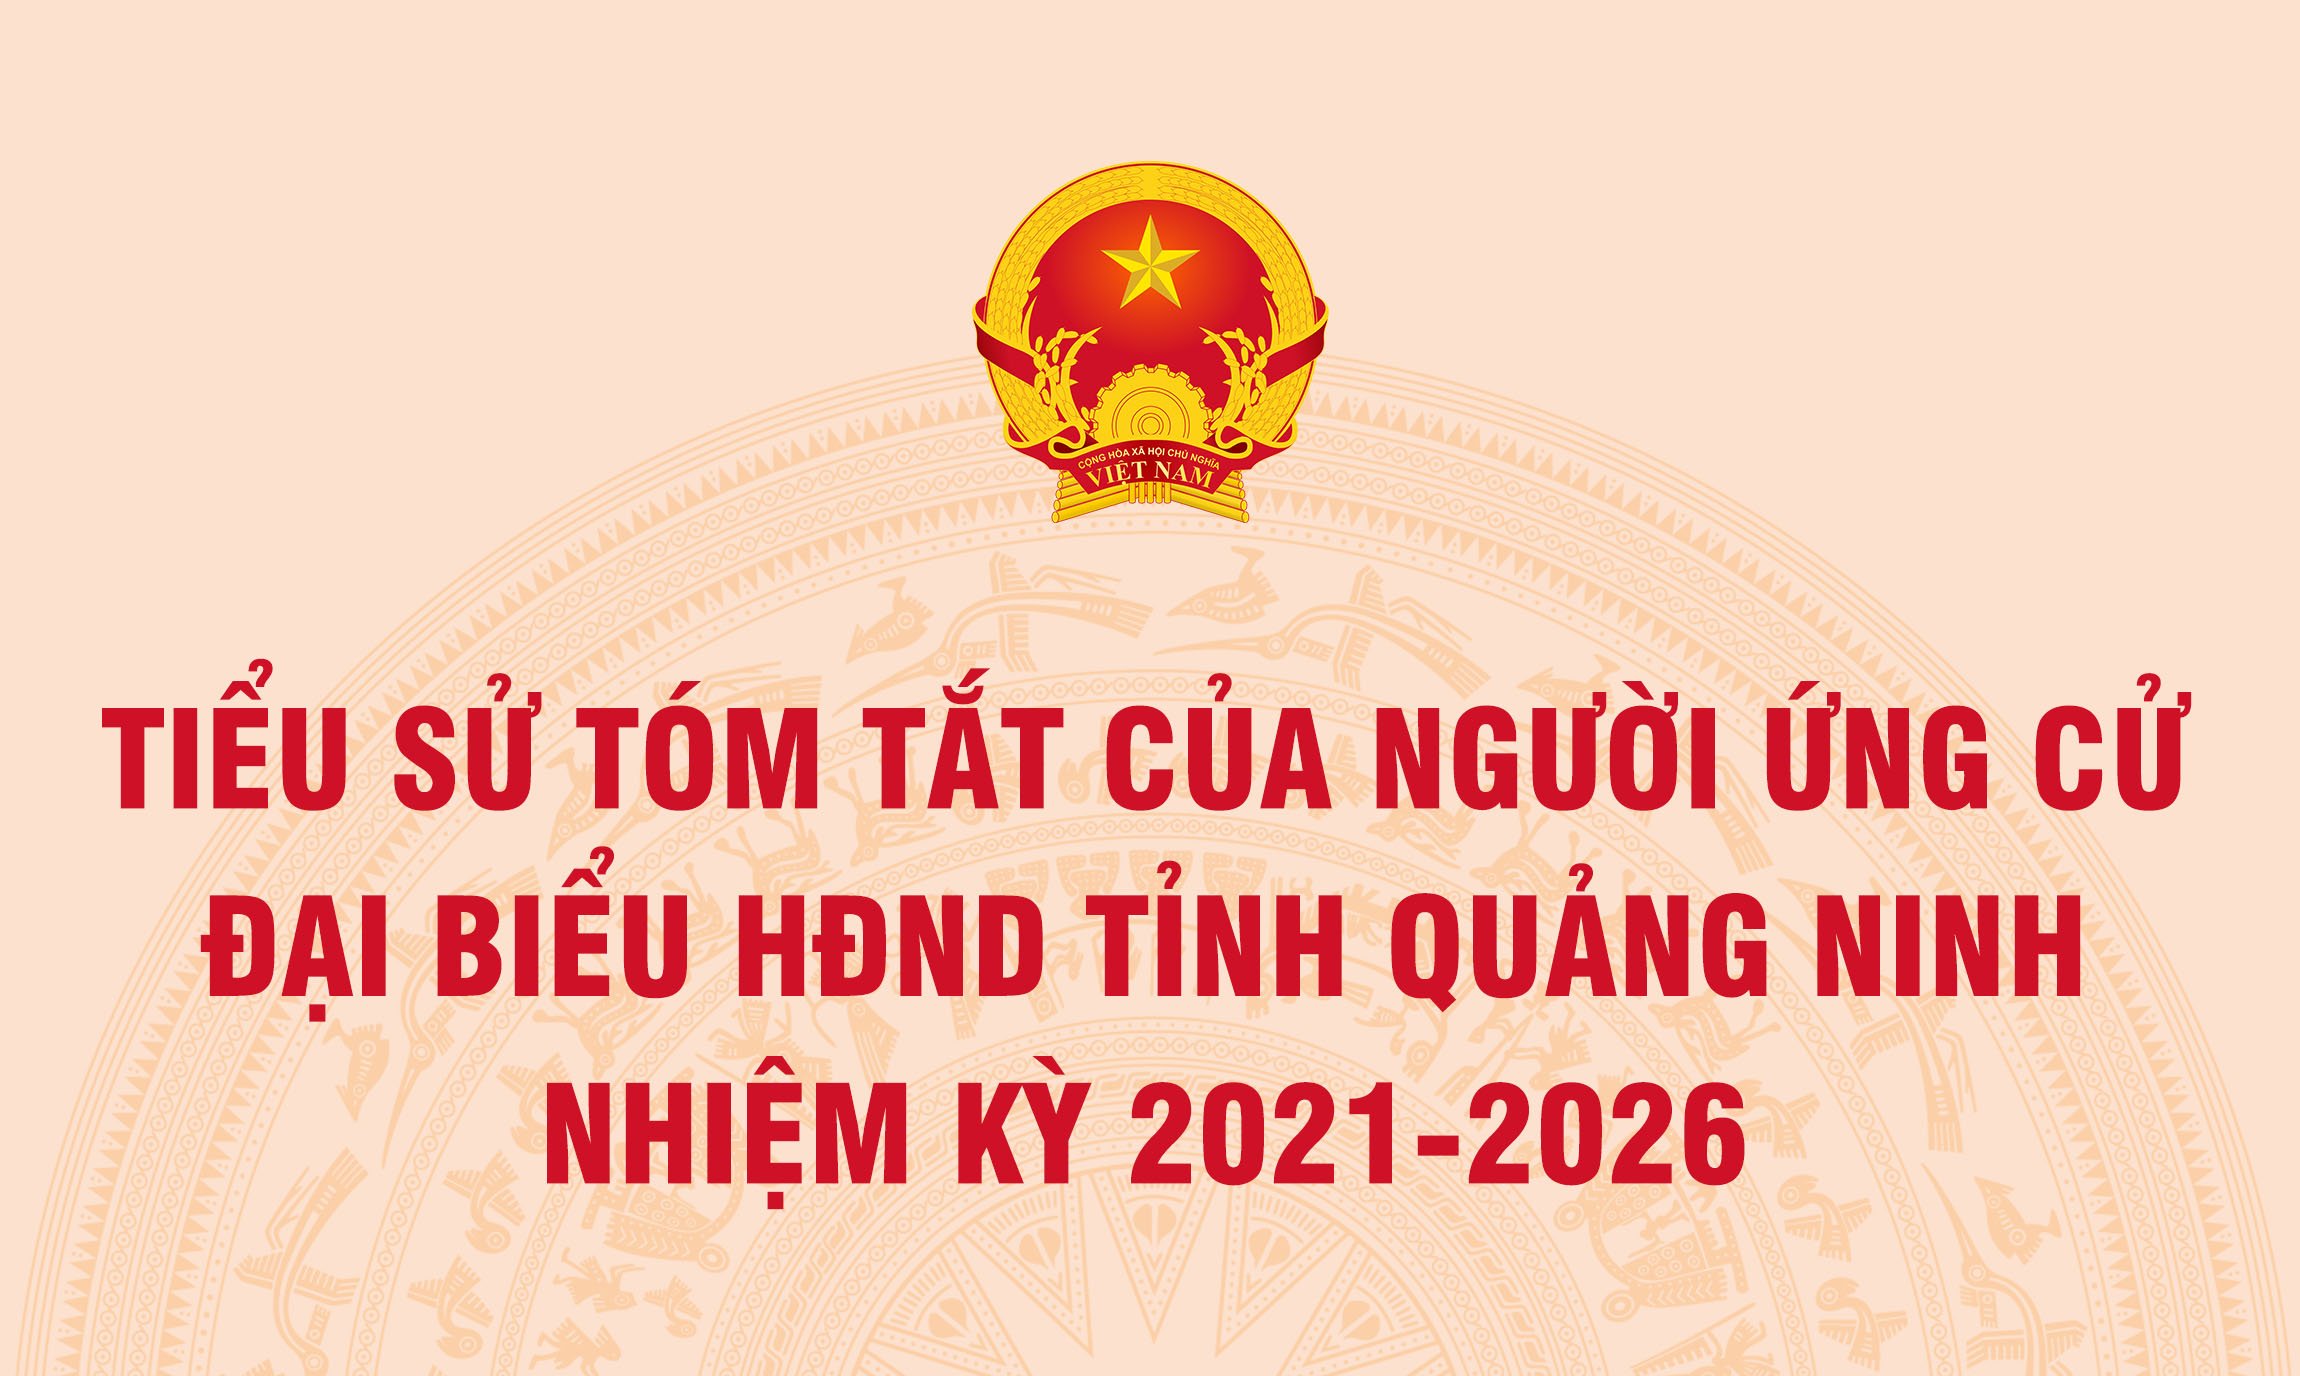 Tiểu sử tóm tắt của người ứng cử Đại biểu HĐND tỉnh Quảng Ninh nhiệm kỳ 2021 - 2026